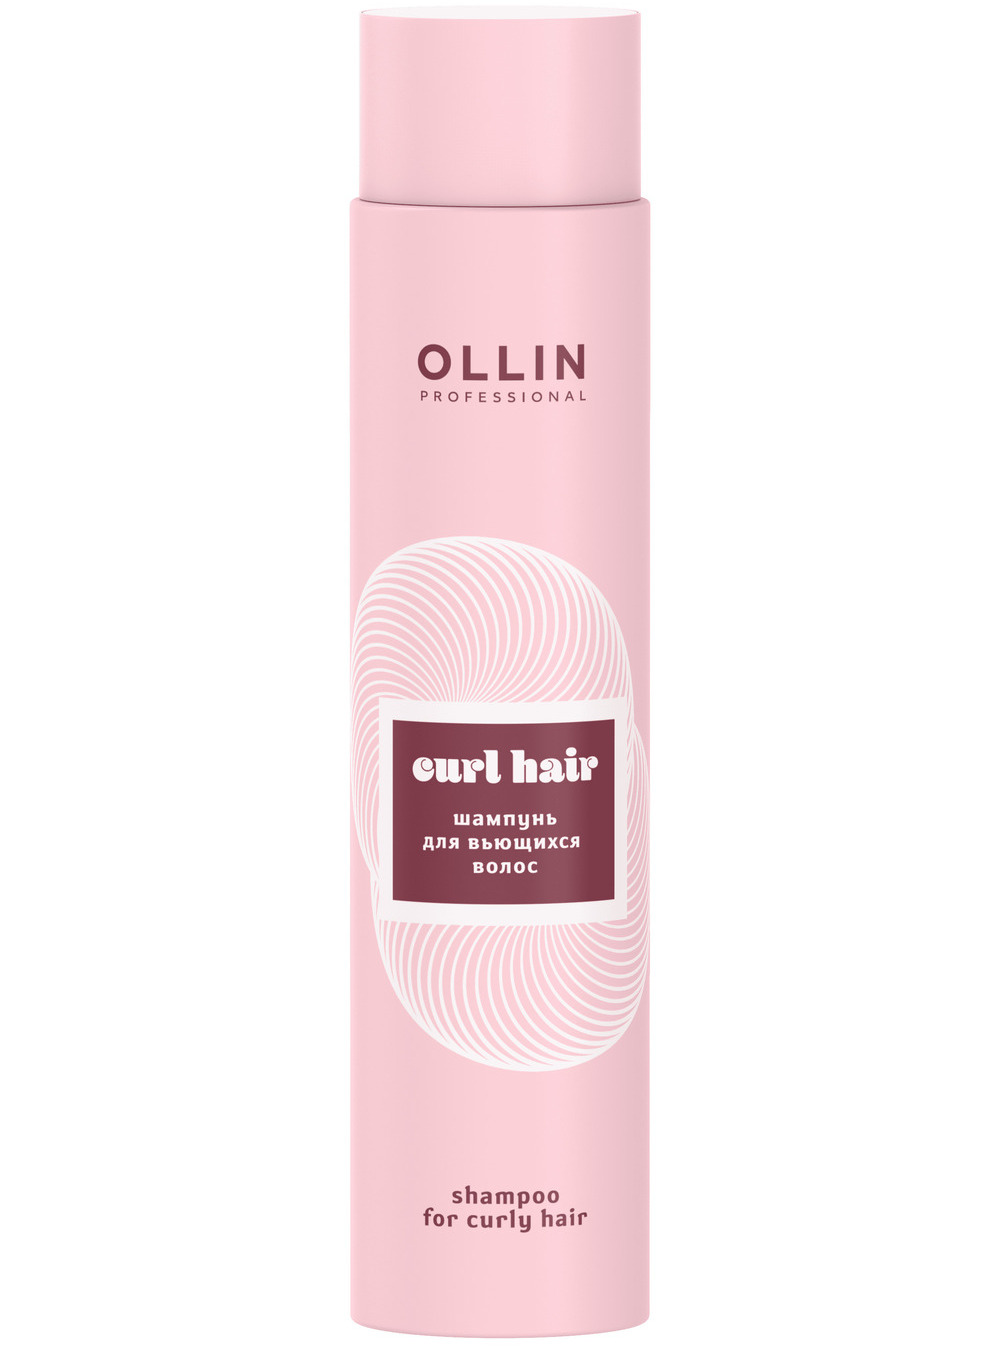 Ollin Professional Шампунь для вьющихся волос, 300 мл (Ollin Professional, Curl & Smooth Hair) ollin шампунь для вьющихся волос curl hair 300 мл